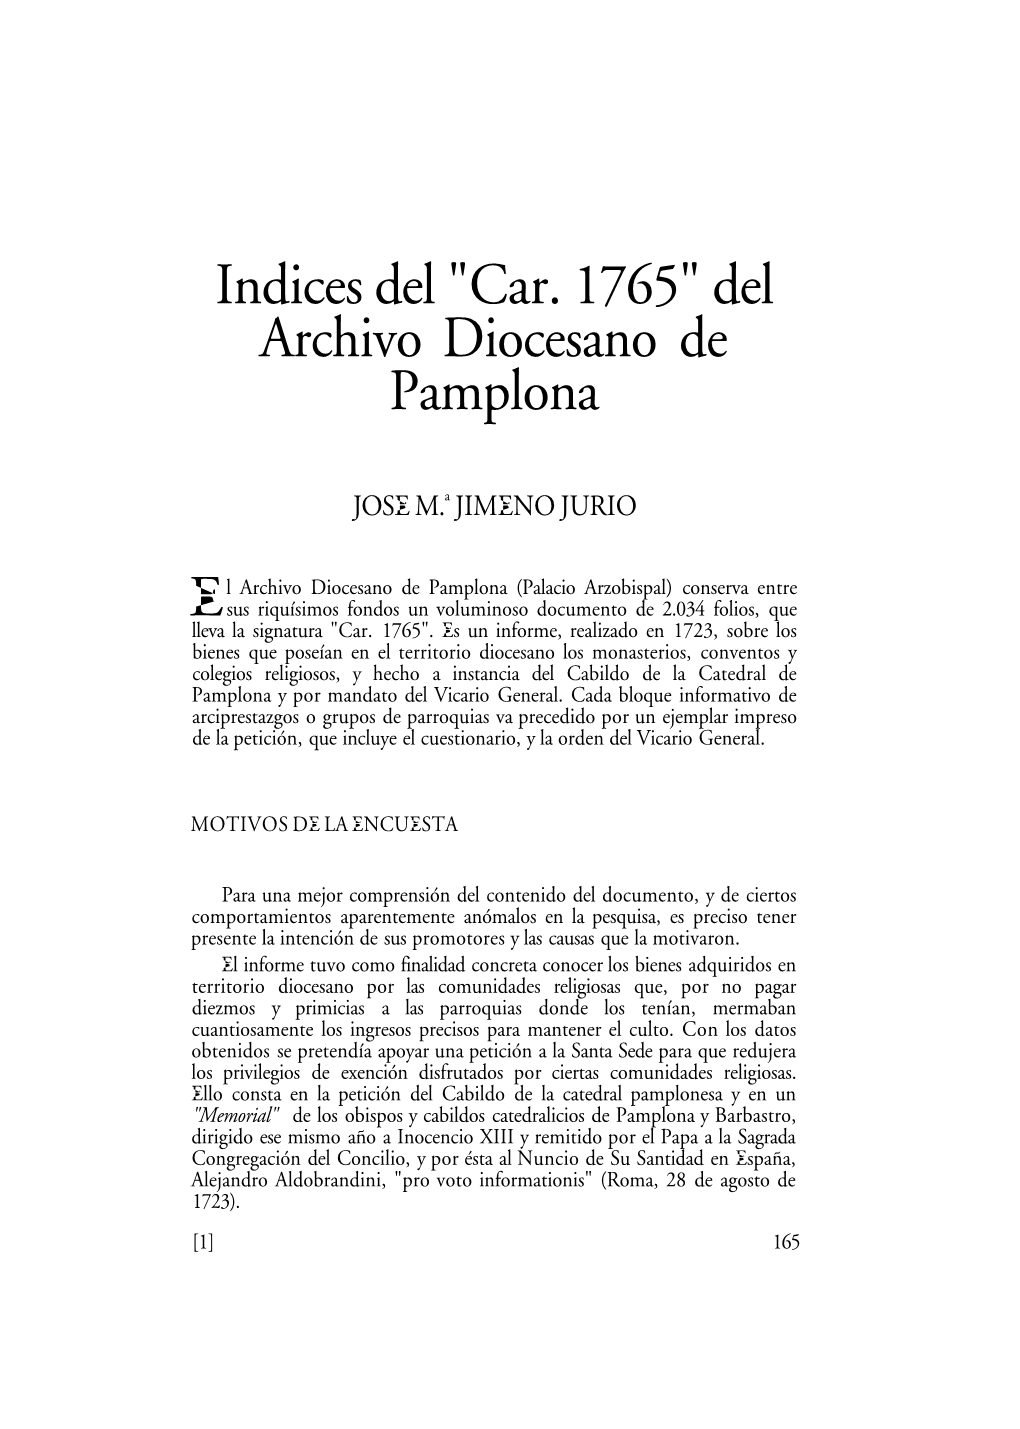 Índices Del" Car. 1765" Del Archivo Diocesano De Pamplona